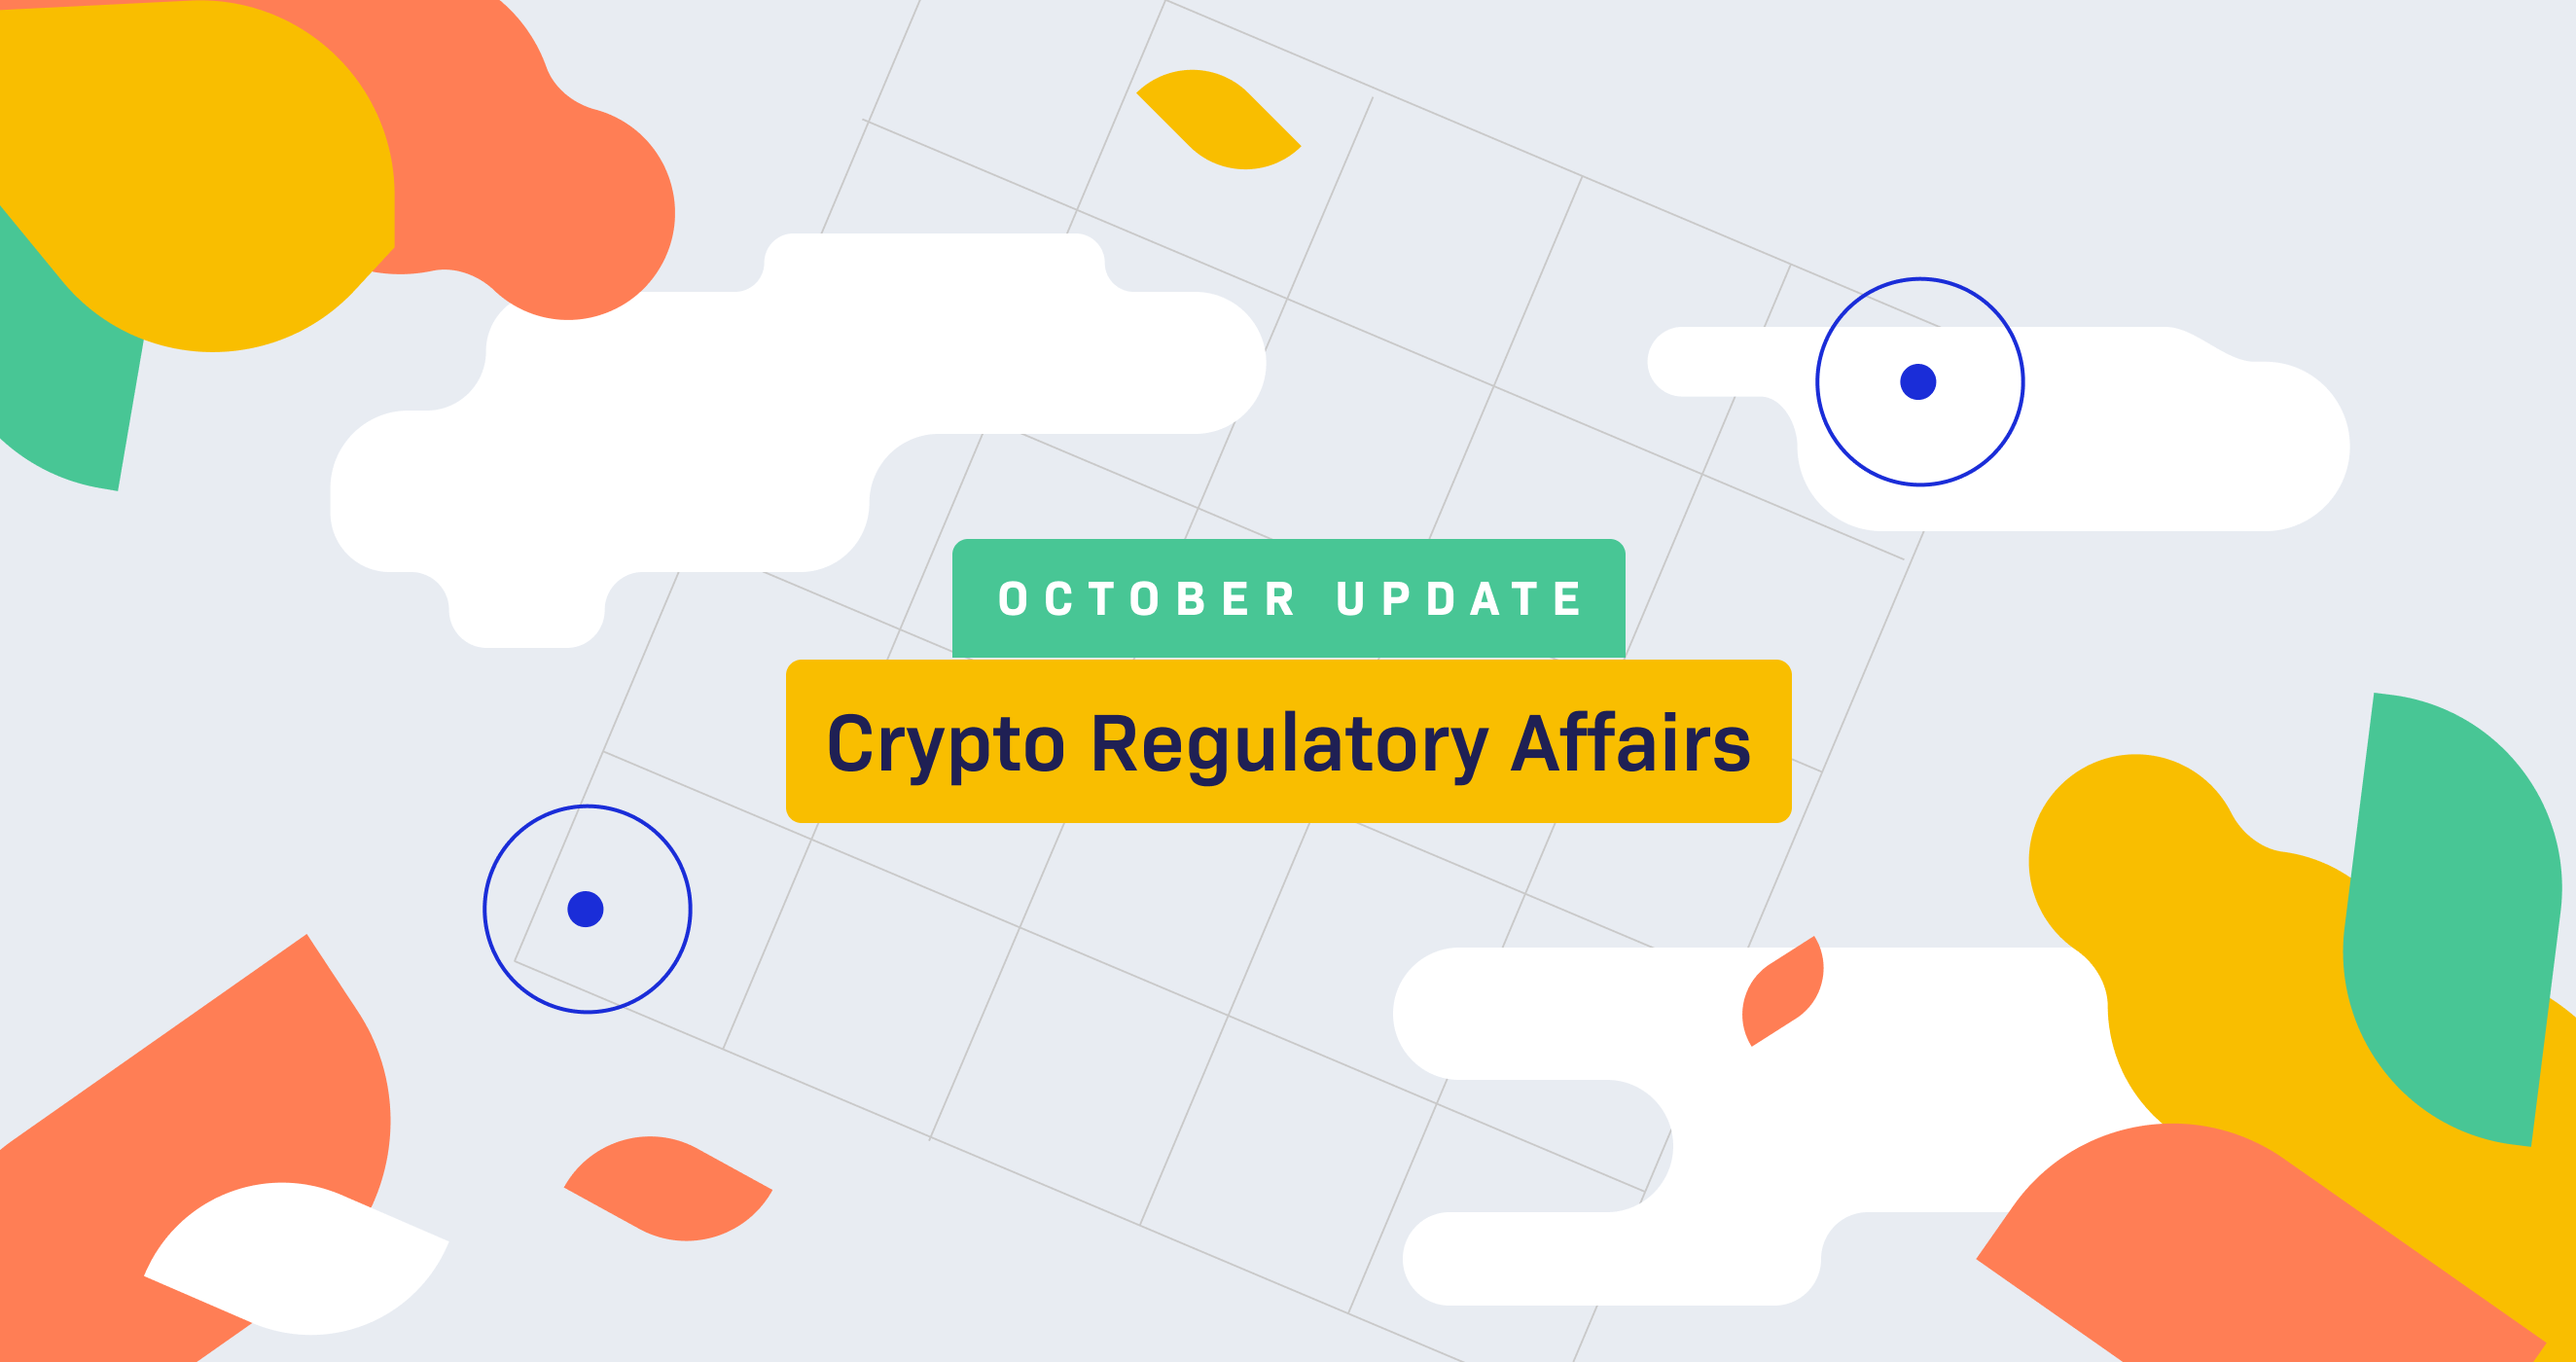 October Update on Crypto Regulatory Affairs 